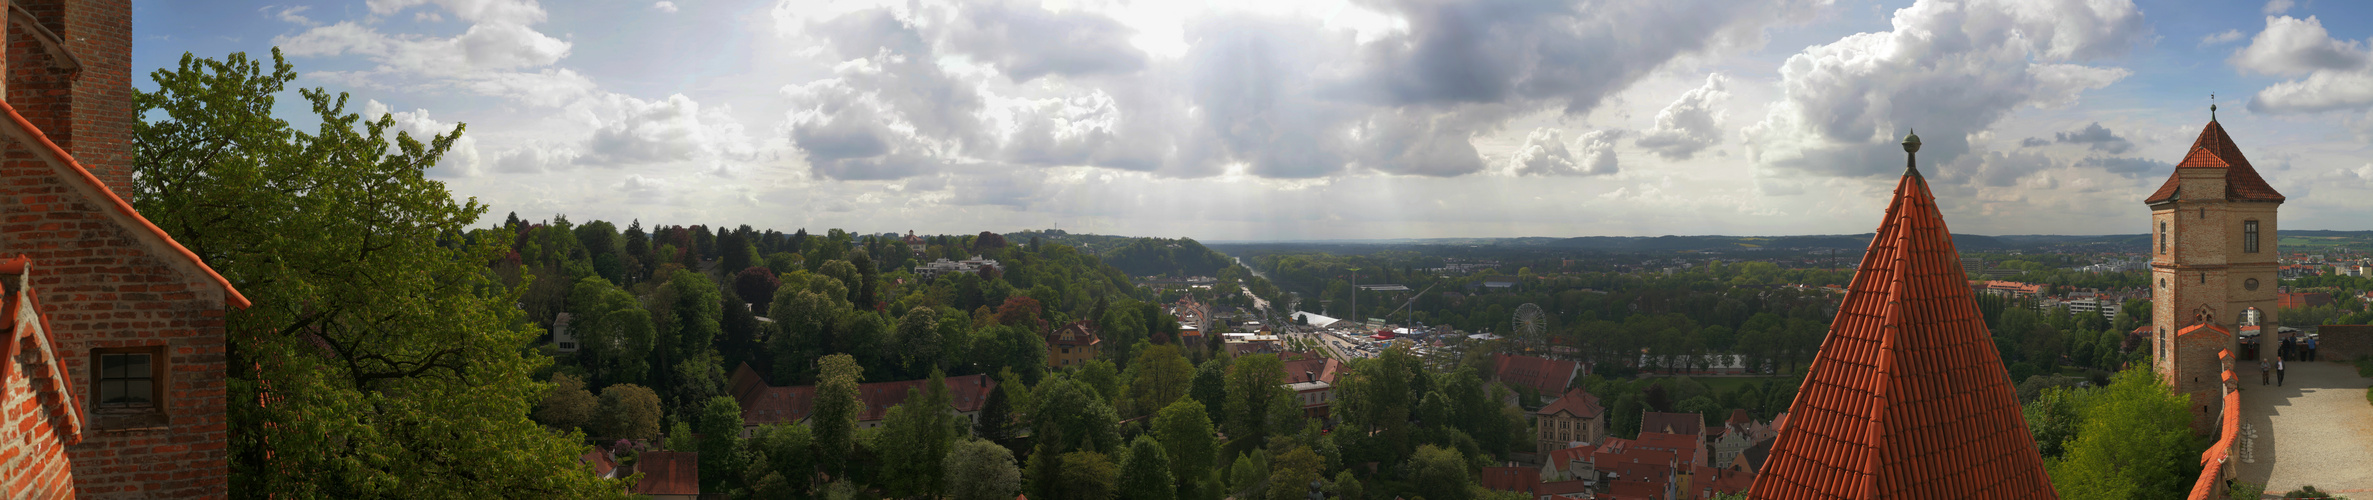 Blick von Burg Trausnitz